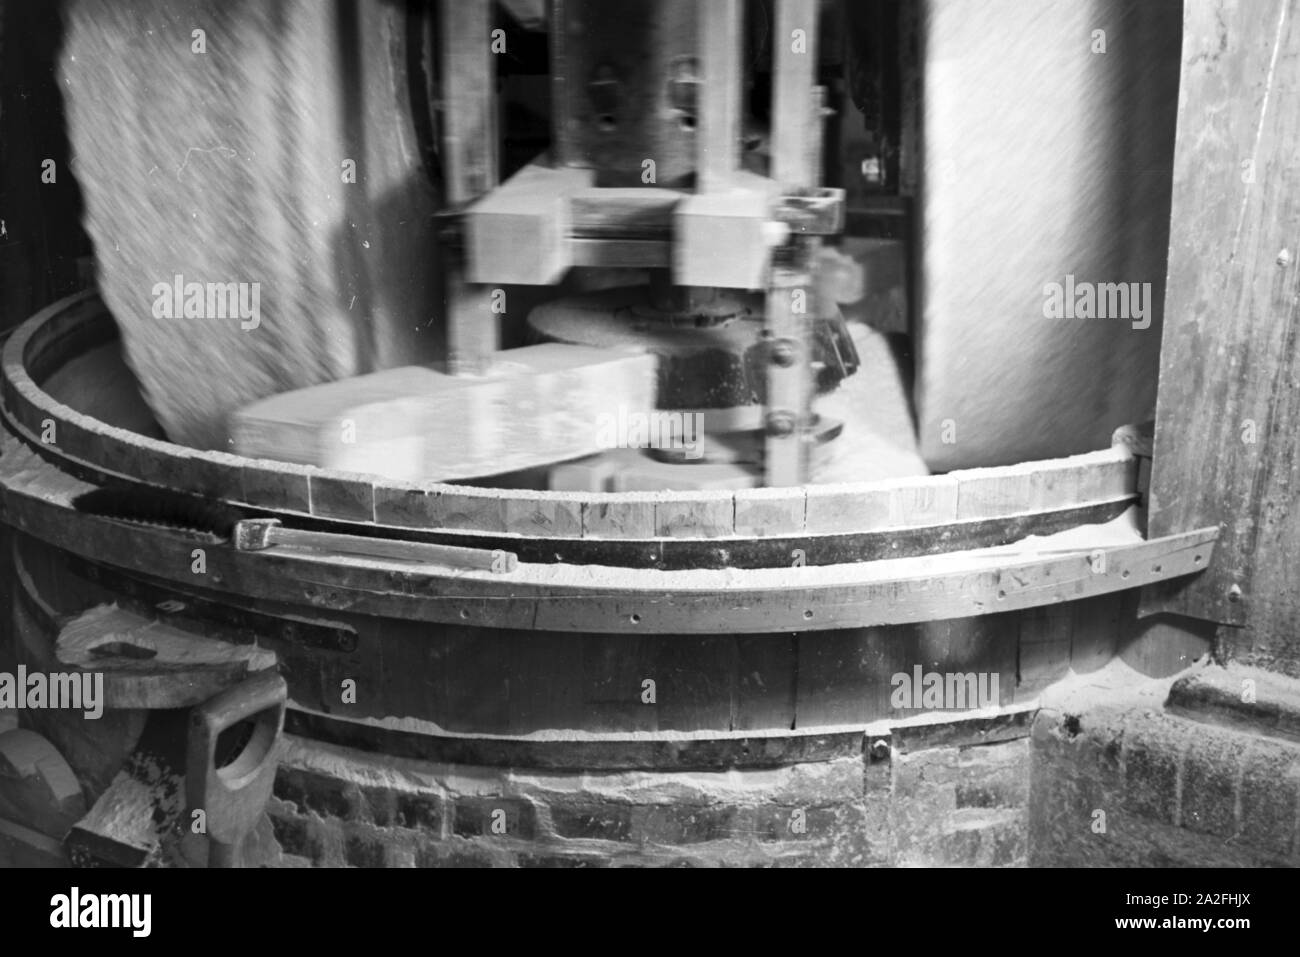 Eine Trommelmühle in der Staatlichen Porzellanmanufaktur Berlin beim Feinmahlen der Rohstoffe, Deutschland 1930er Jahre. Eine Mühle in der Staatlichen Porzellanmanufaktur Berlin Schleifen der Rohstoffe, Deutschland 1930. Stockfoto